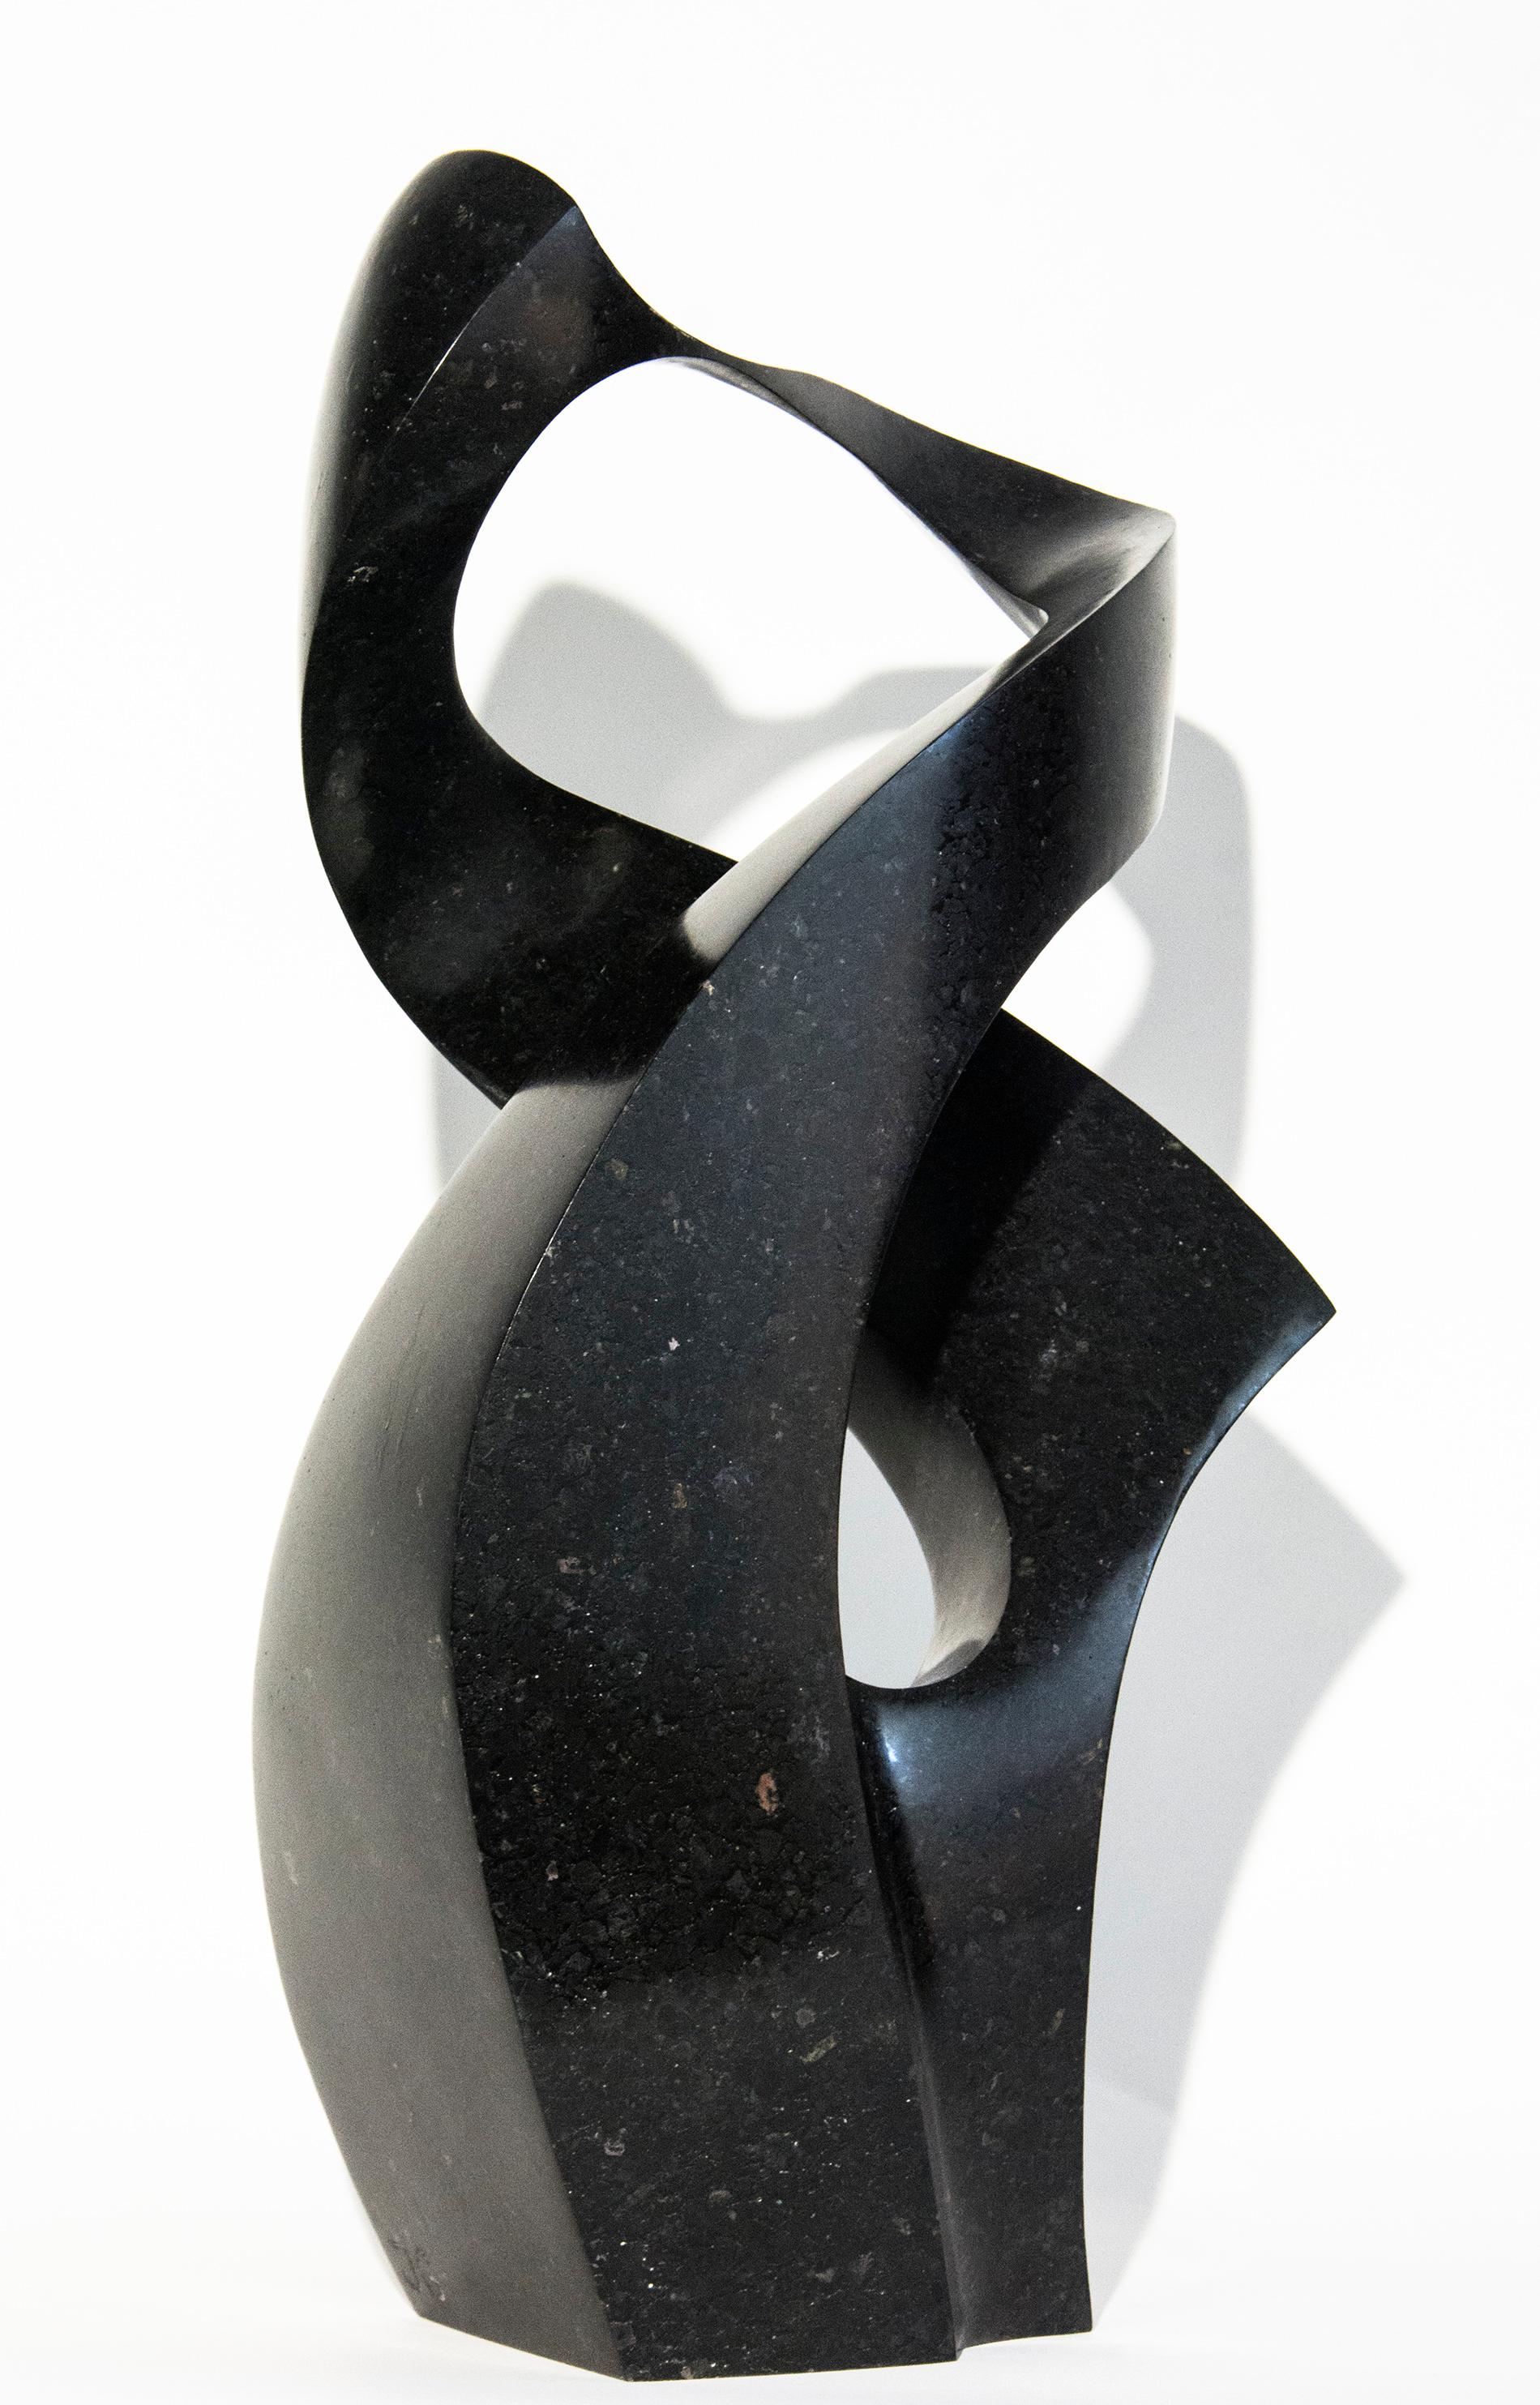 Die lyrische und bewegende abstrakte Darstellung einer menschlichen Umarmung des Bildhauers Jeremy Guy ist aus schwarzem Granit gefertigt. Zwei sanft geschwungene Formen verflechten sich in dieser zeitgenössischen Tischskulptur, die auf eine Auflage